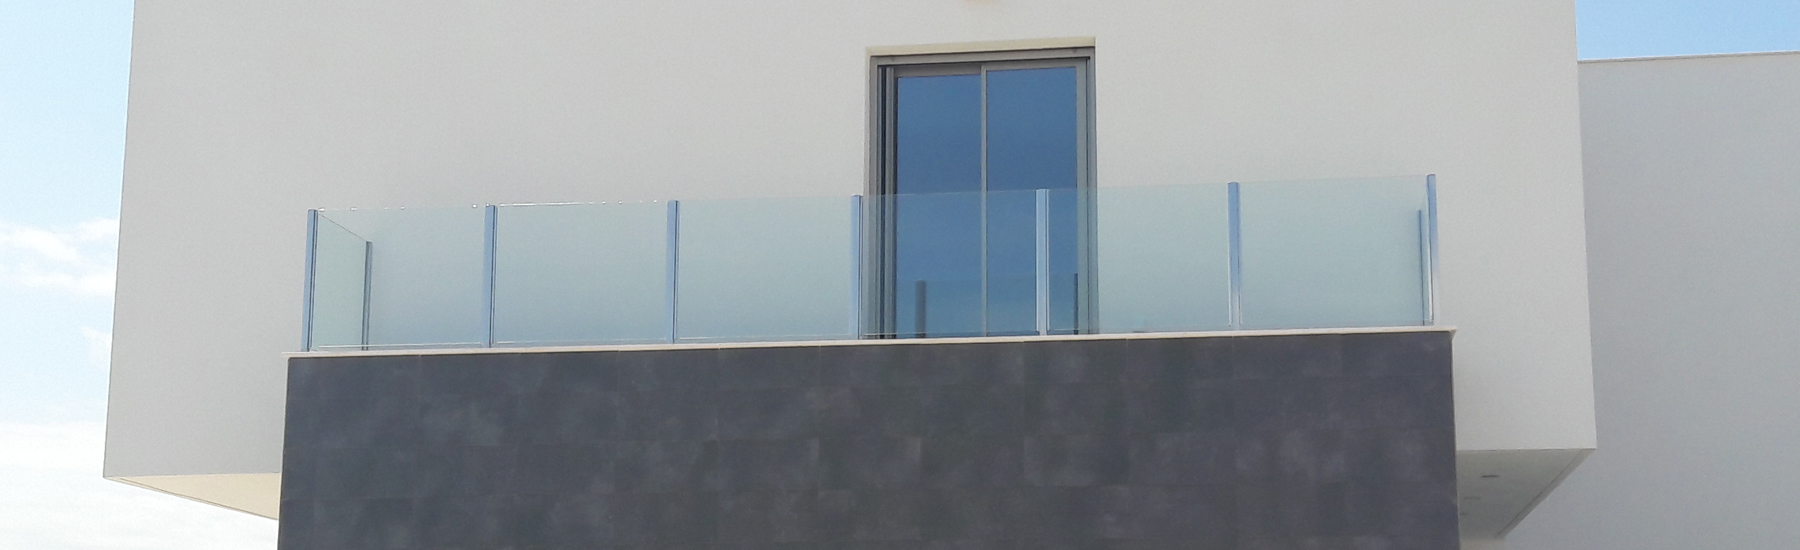 Barana perimetral de vidre i porta d'accés a terrassa d'alumini Technal sèrie Soleal